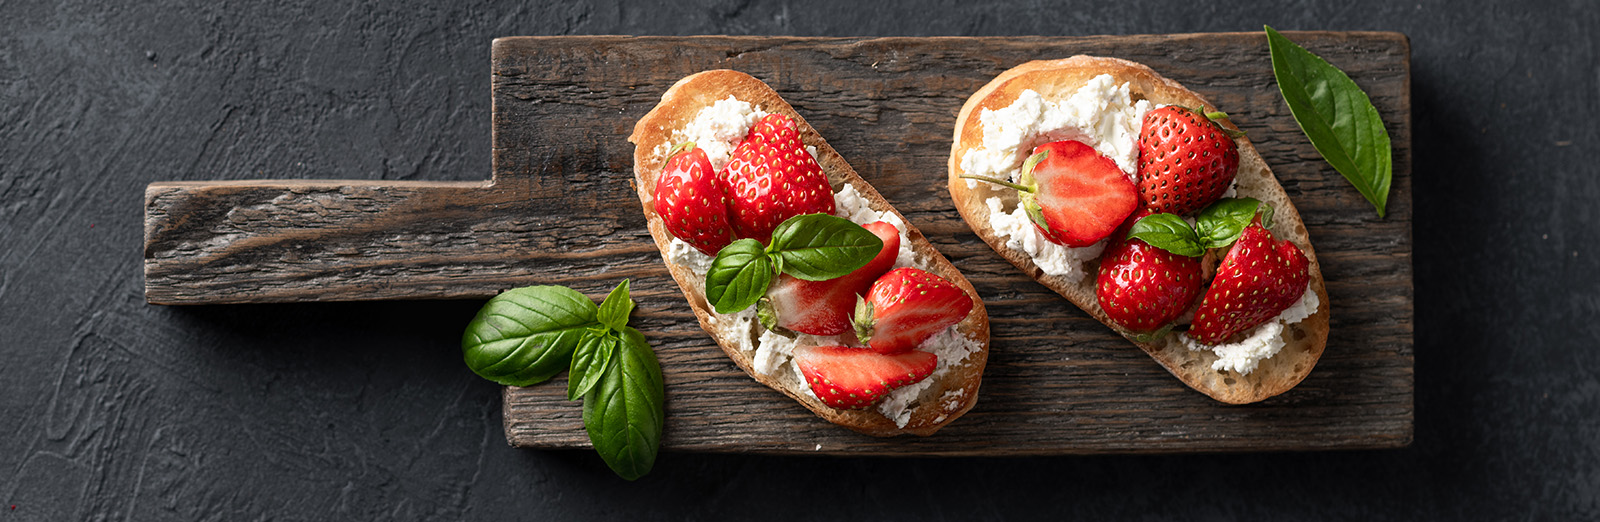 Strawberry and cream cheese toast - hero image.jpg